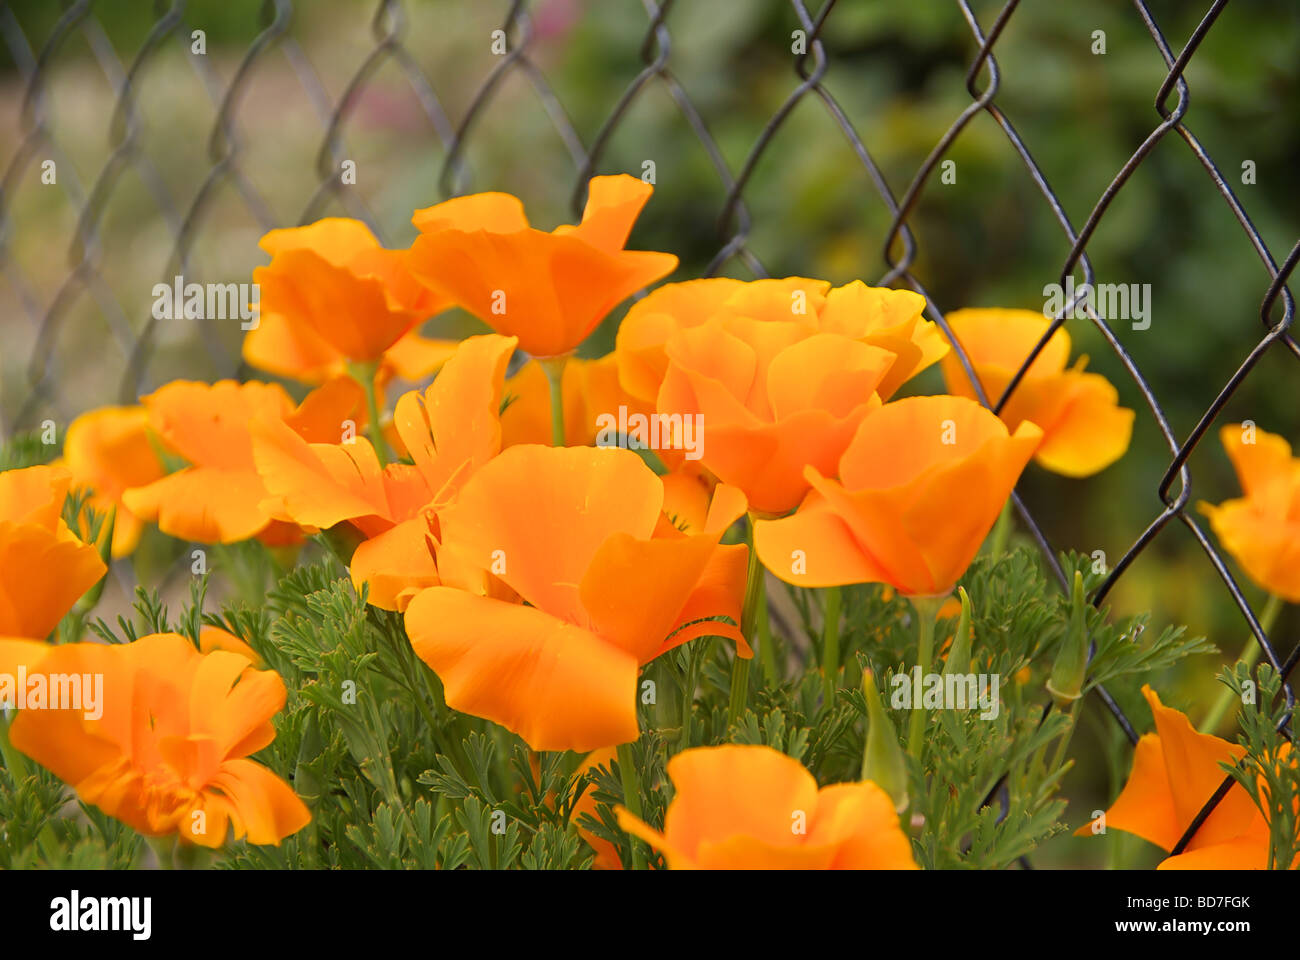 Kalifornischer Mohn California poppy 05 Stock Photo